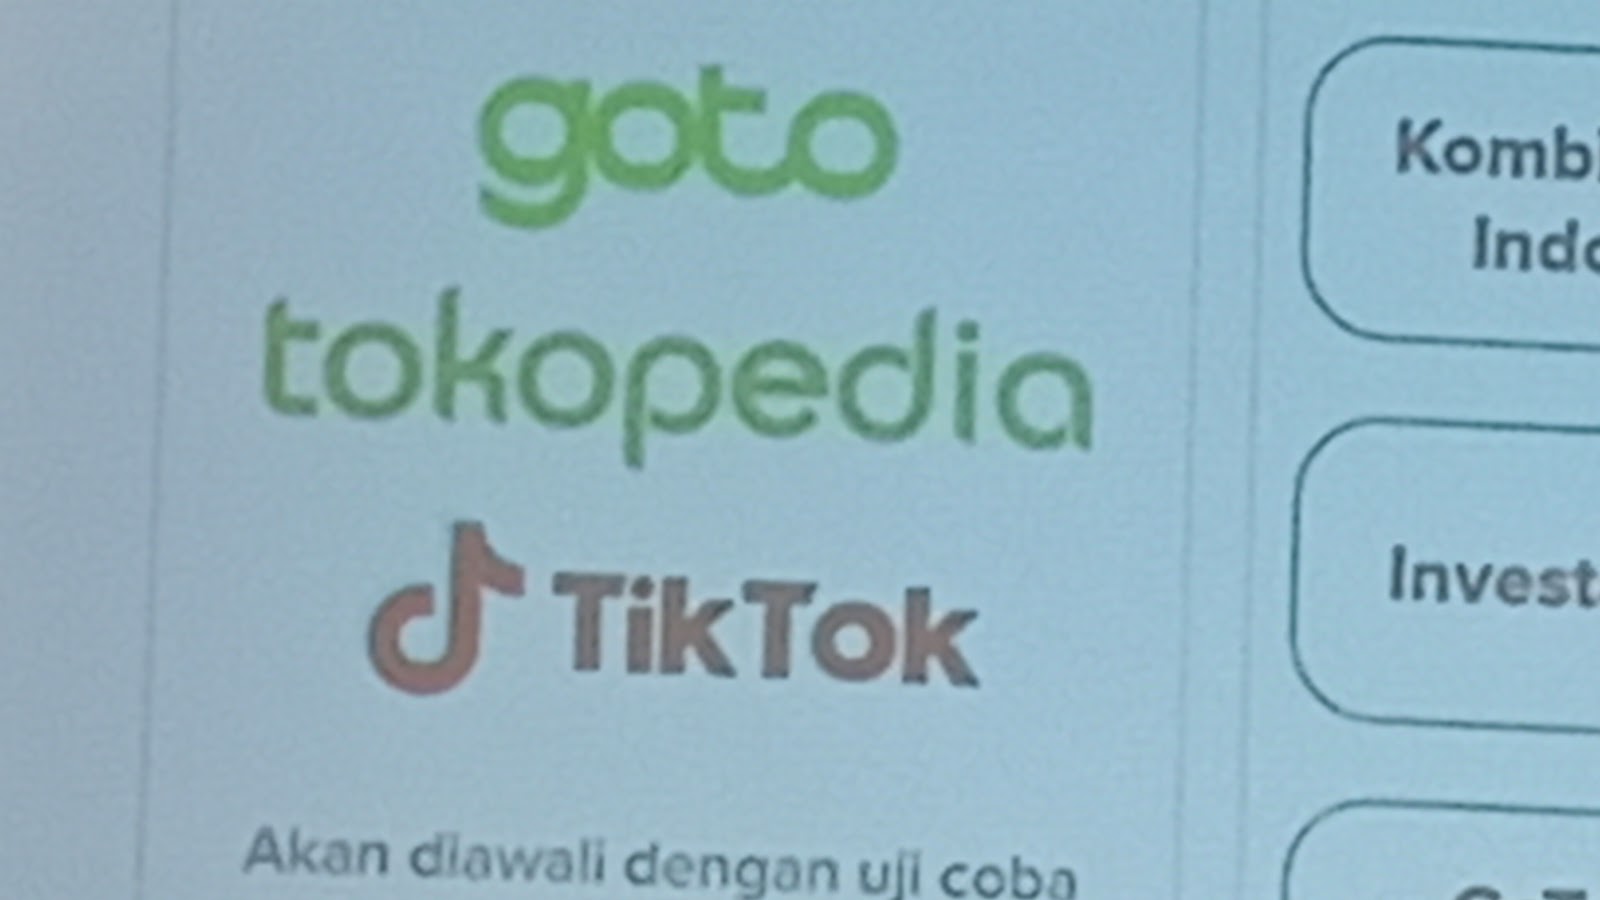 TikTok Shop is Back: Dikelola Tokopedia, Usai TikTok Investasi Rp 23 Triliun ke GoTo